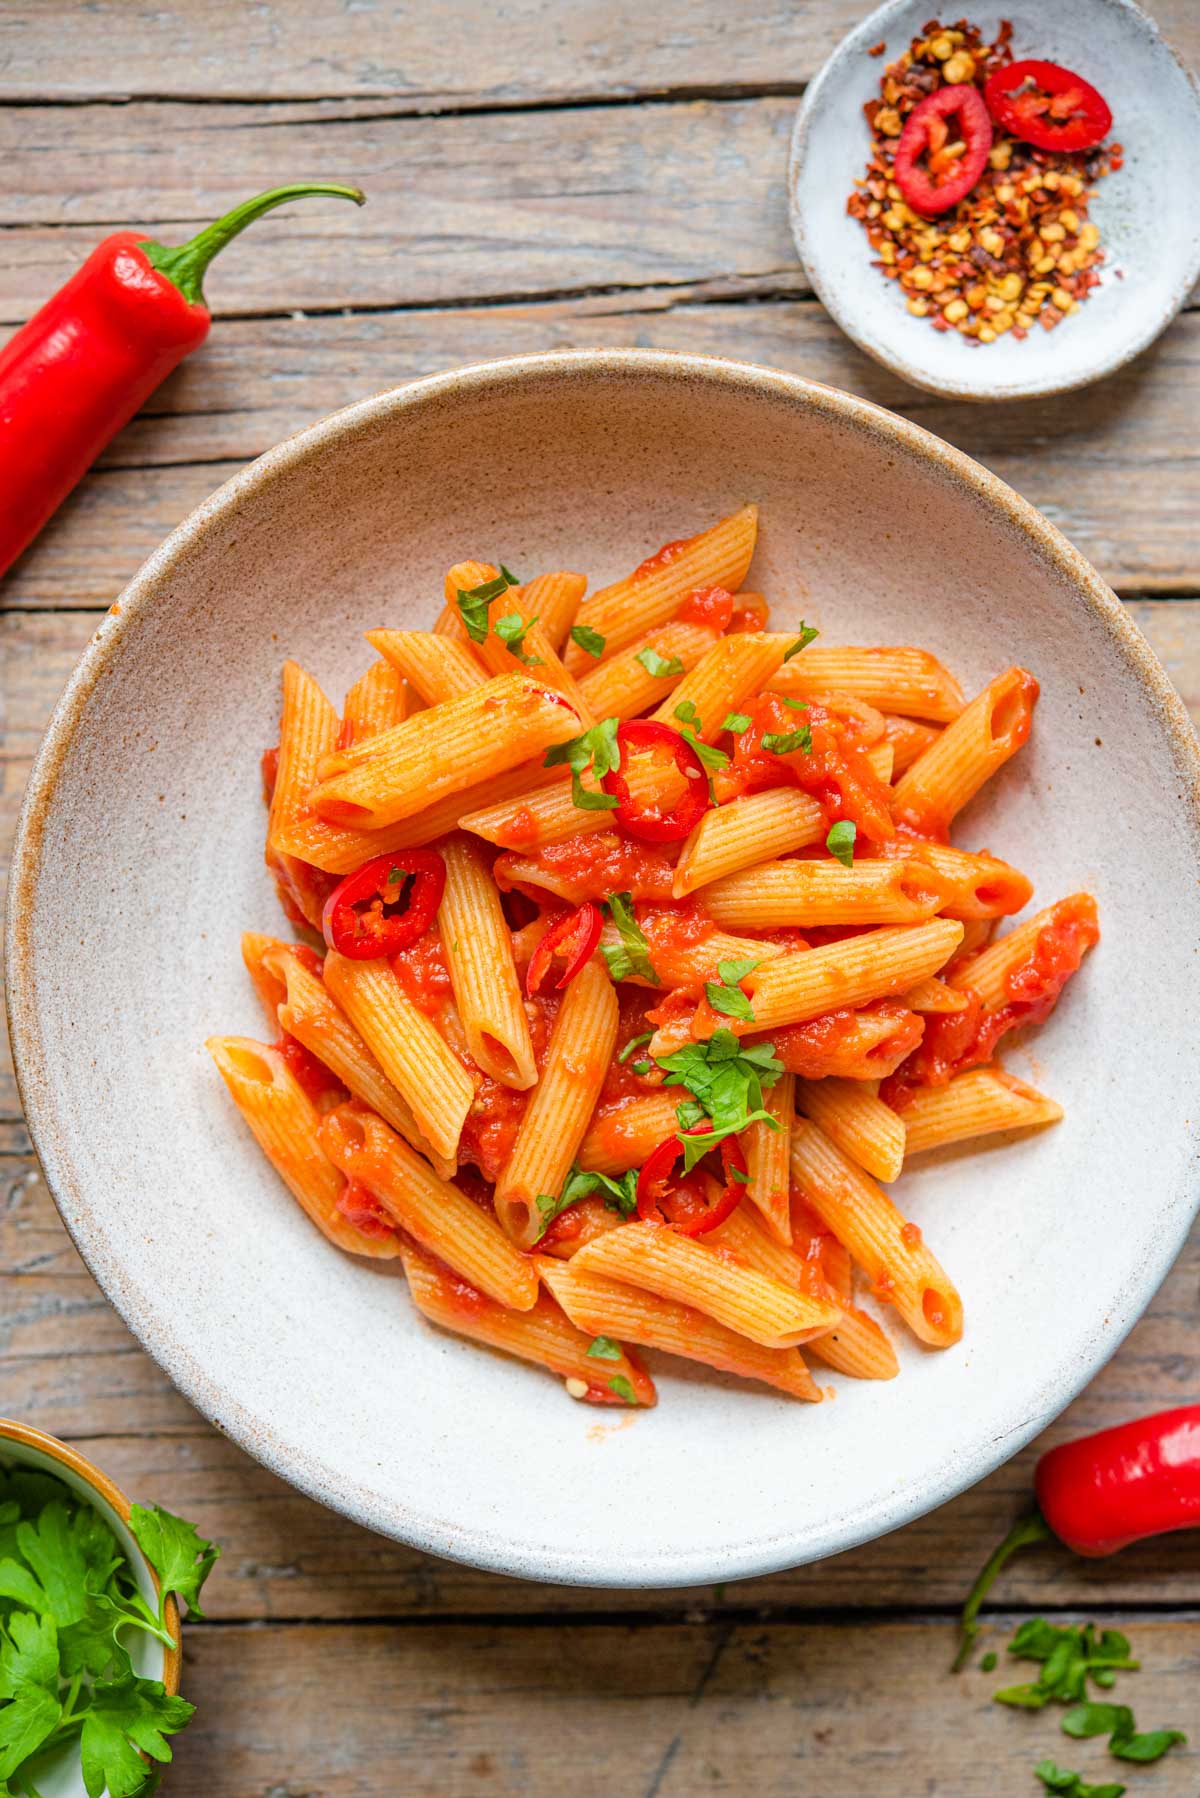 Penne all’Arrabbiata: Spicy Italian Tomato Pasta
